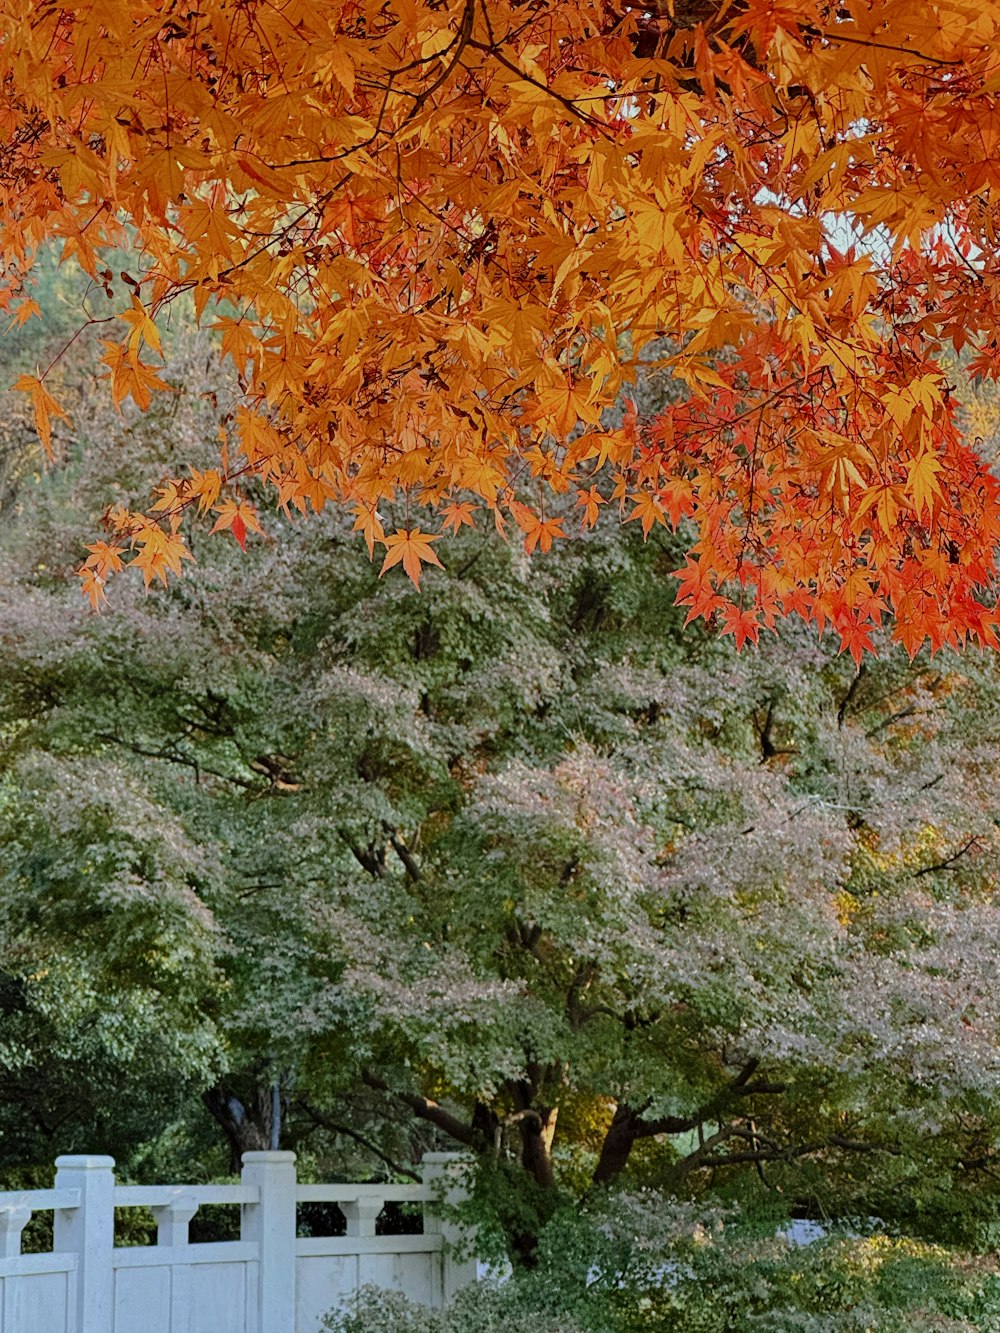 주황색 잎이 달린 나무로 둘러싸인 흰색 울타리